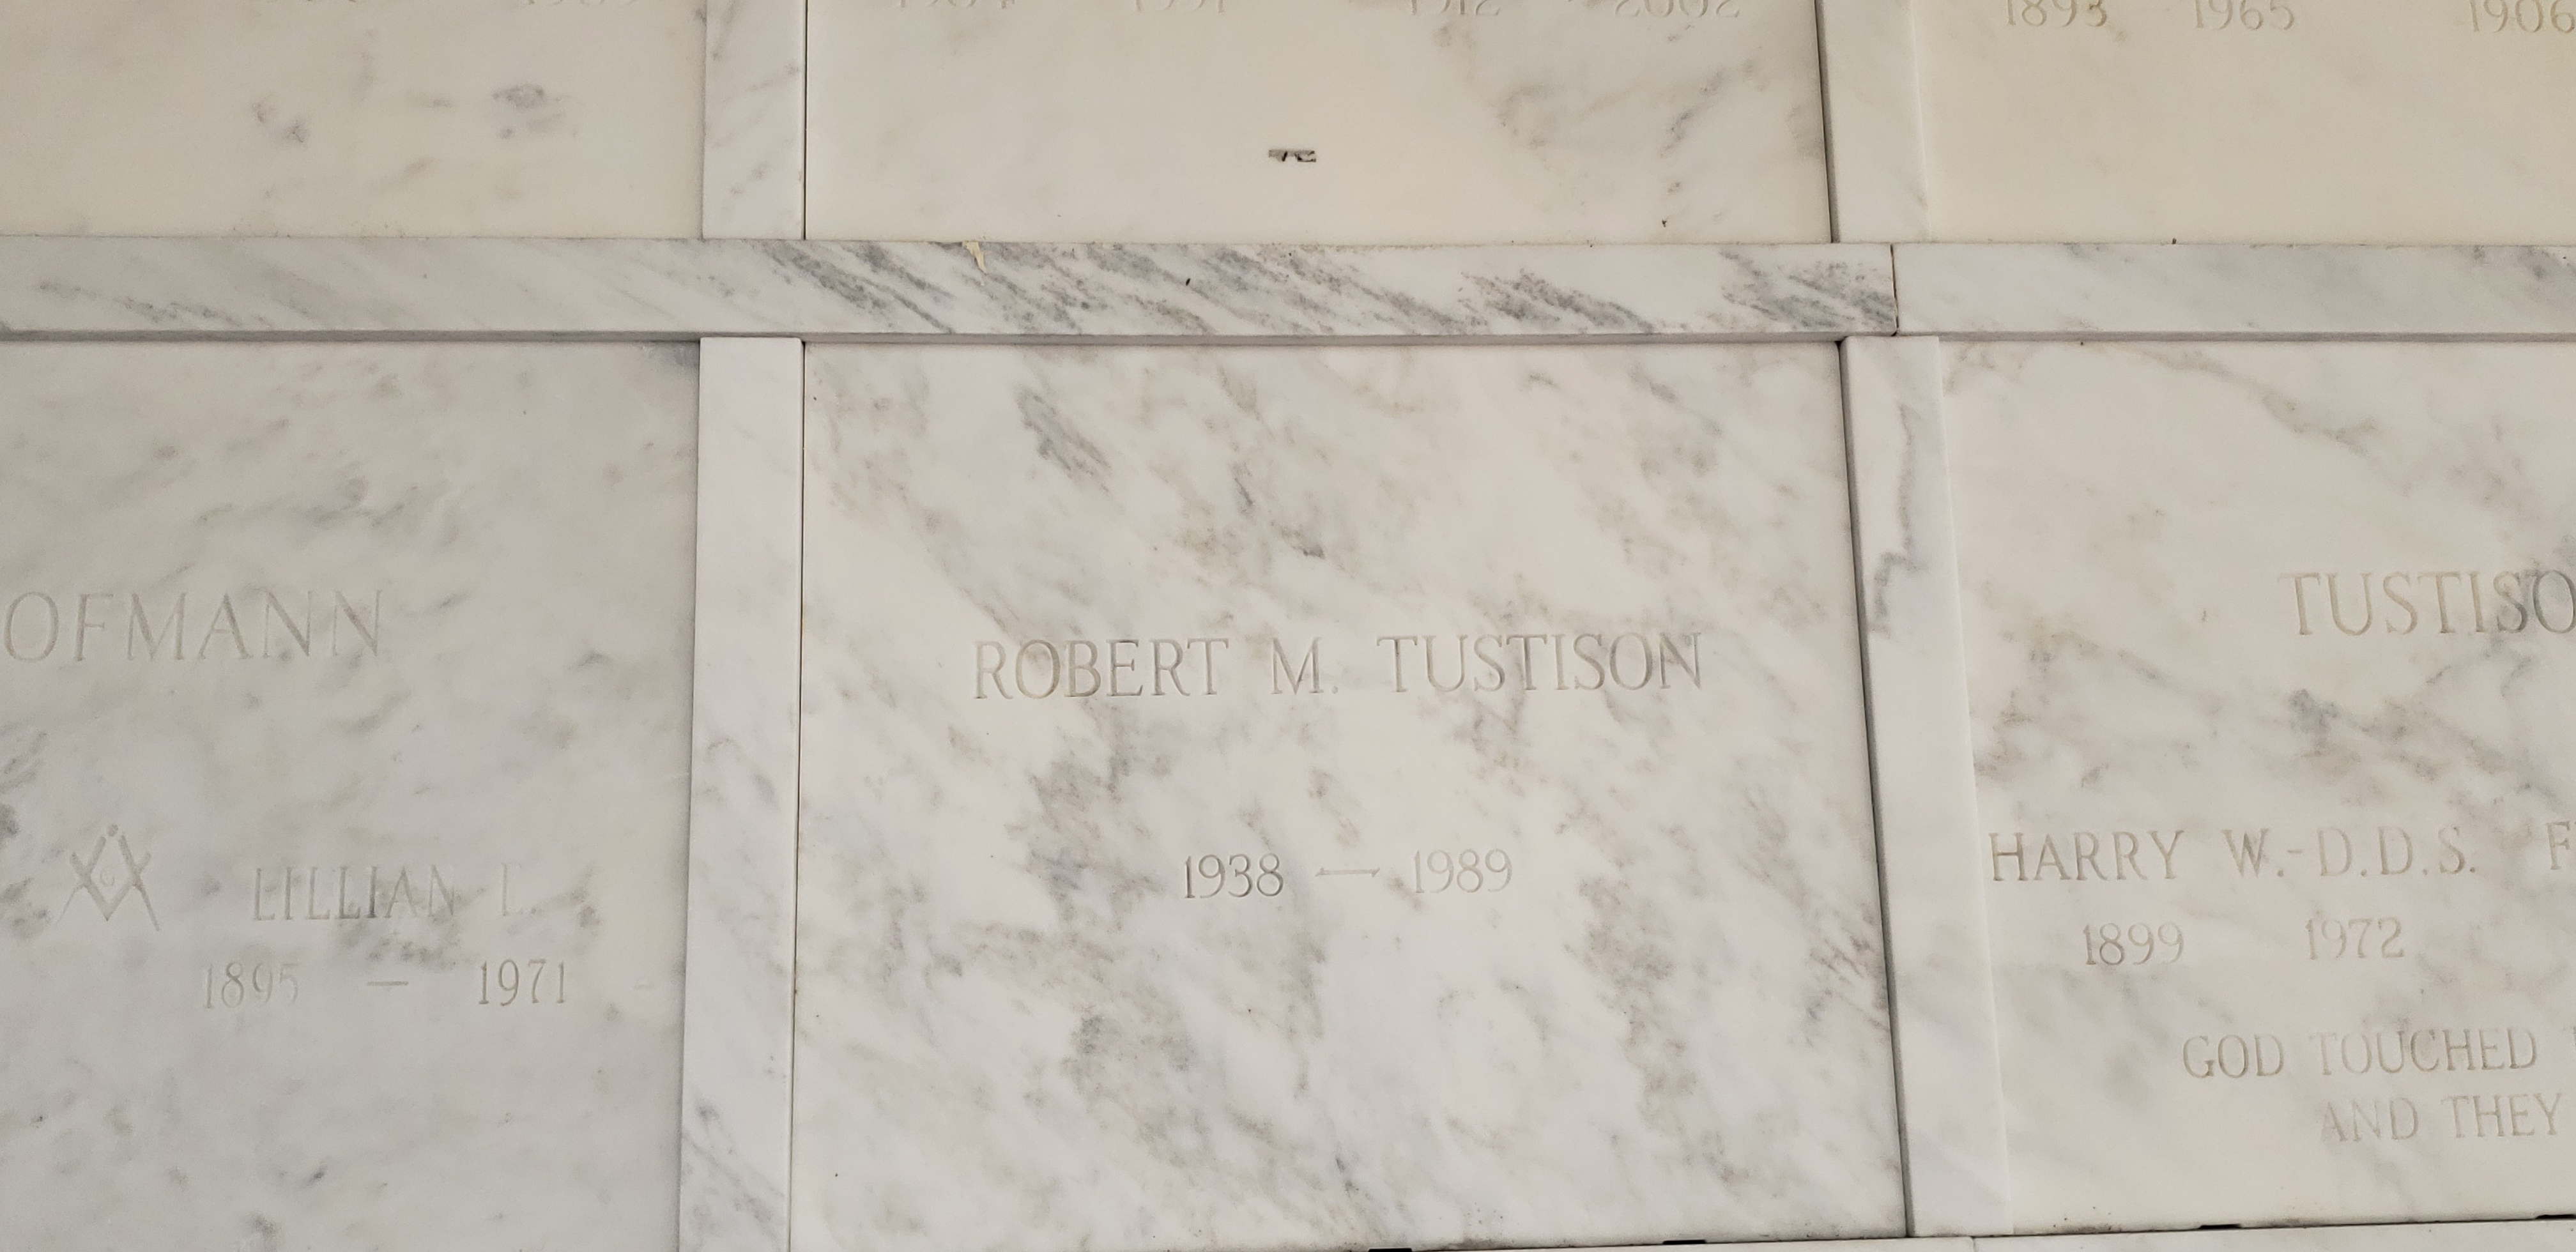 Robert M Tustison